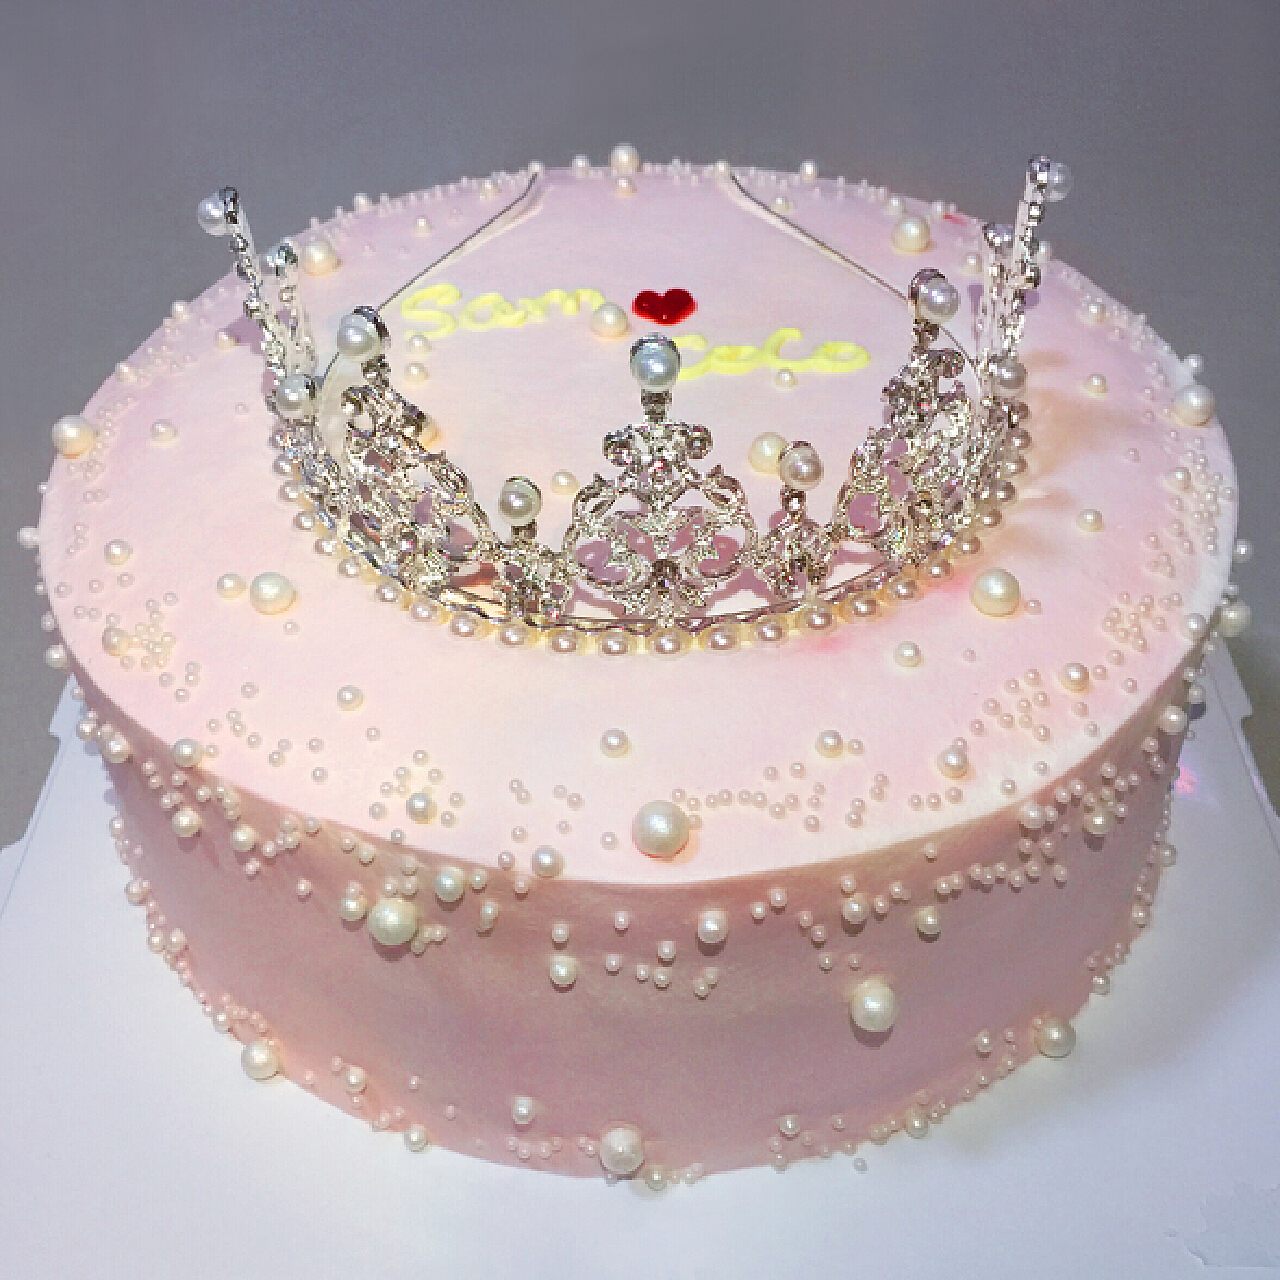 皇冠蛋糕怎么做_皇冠蛋糕的做法_如果_smile_豆果美食